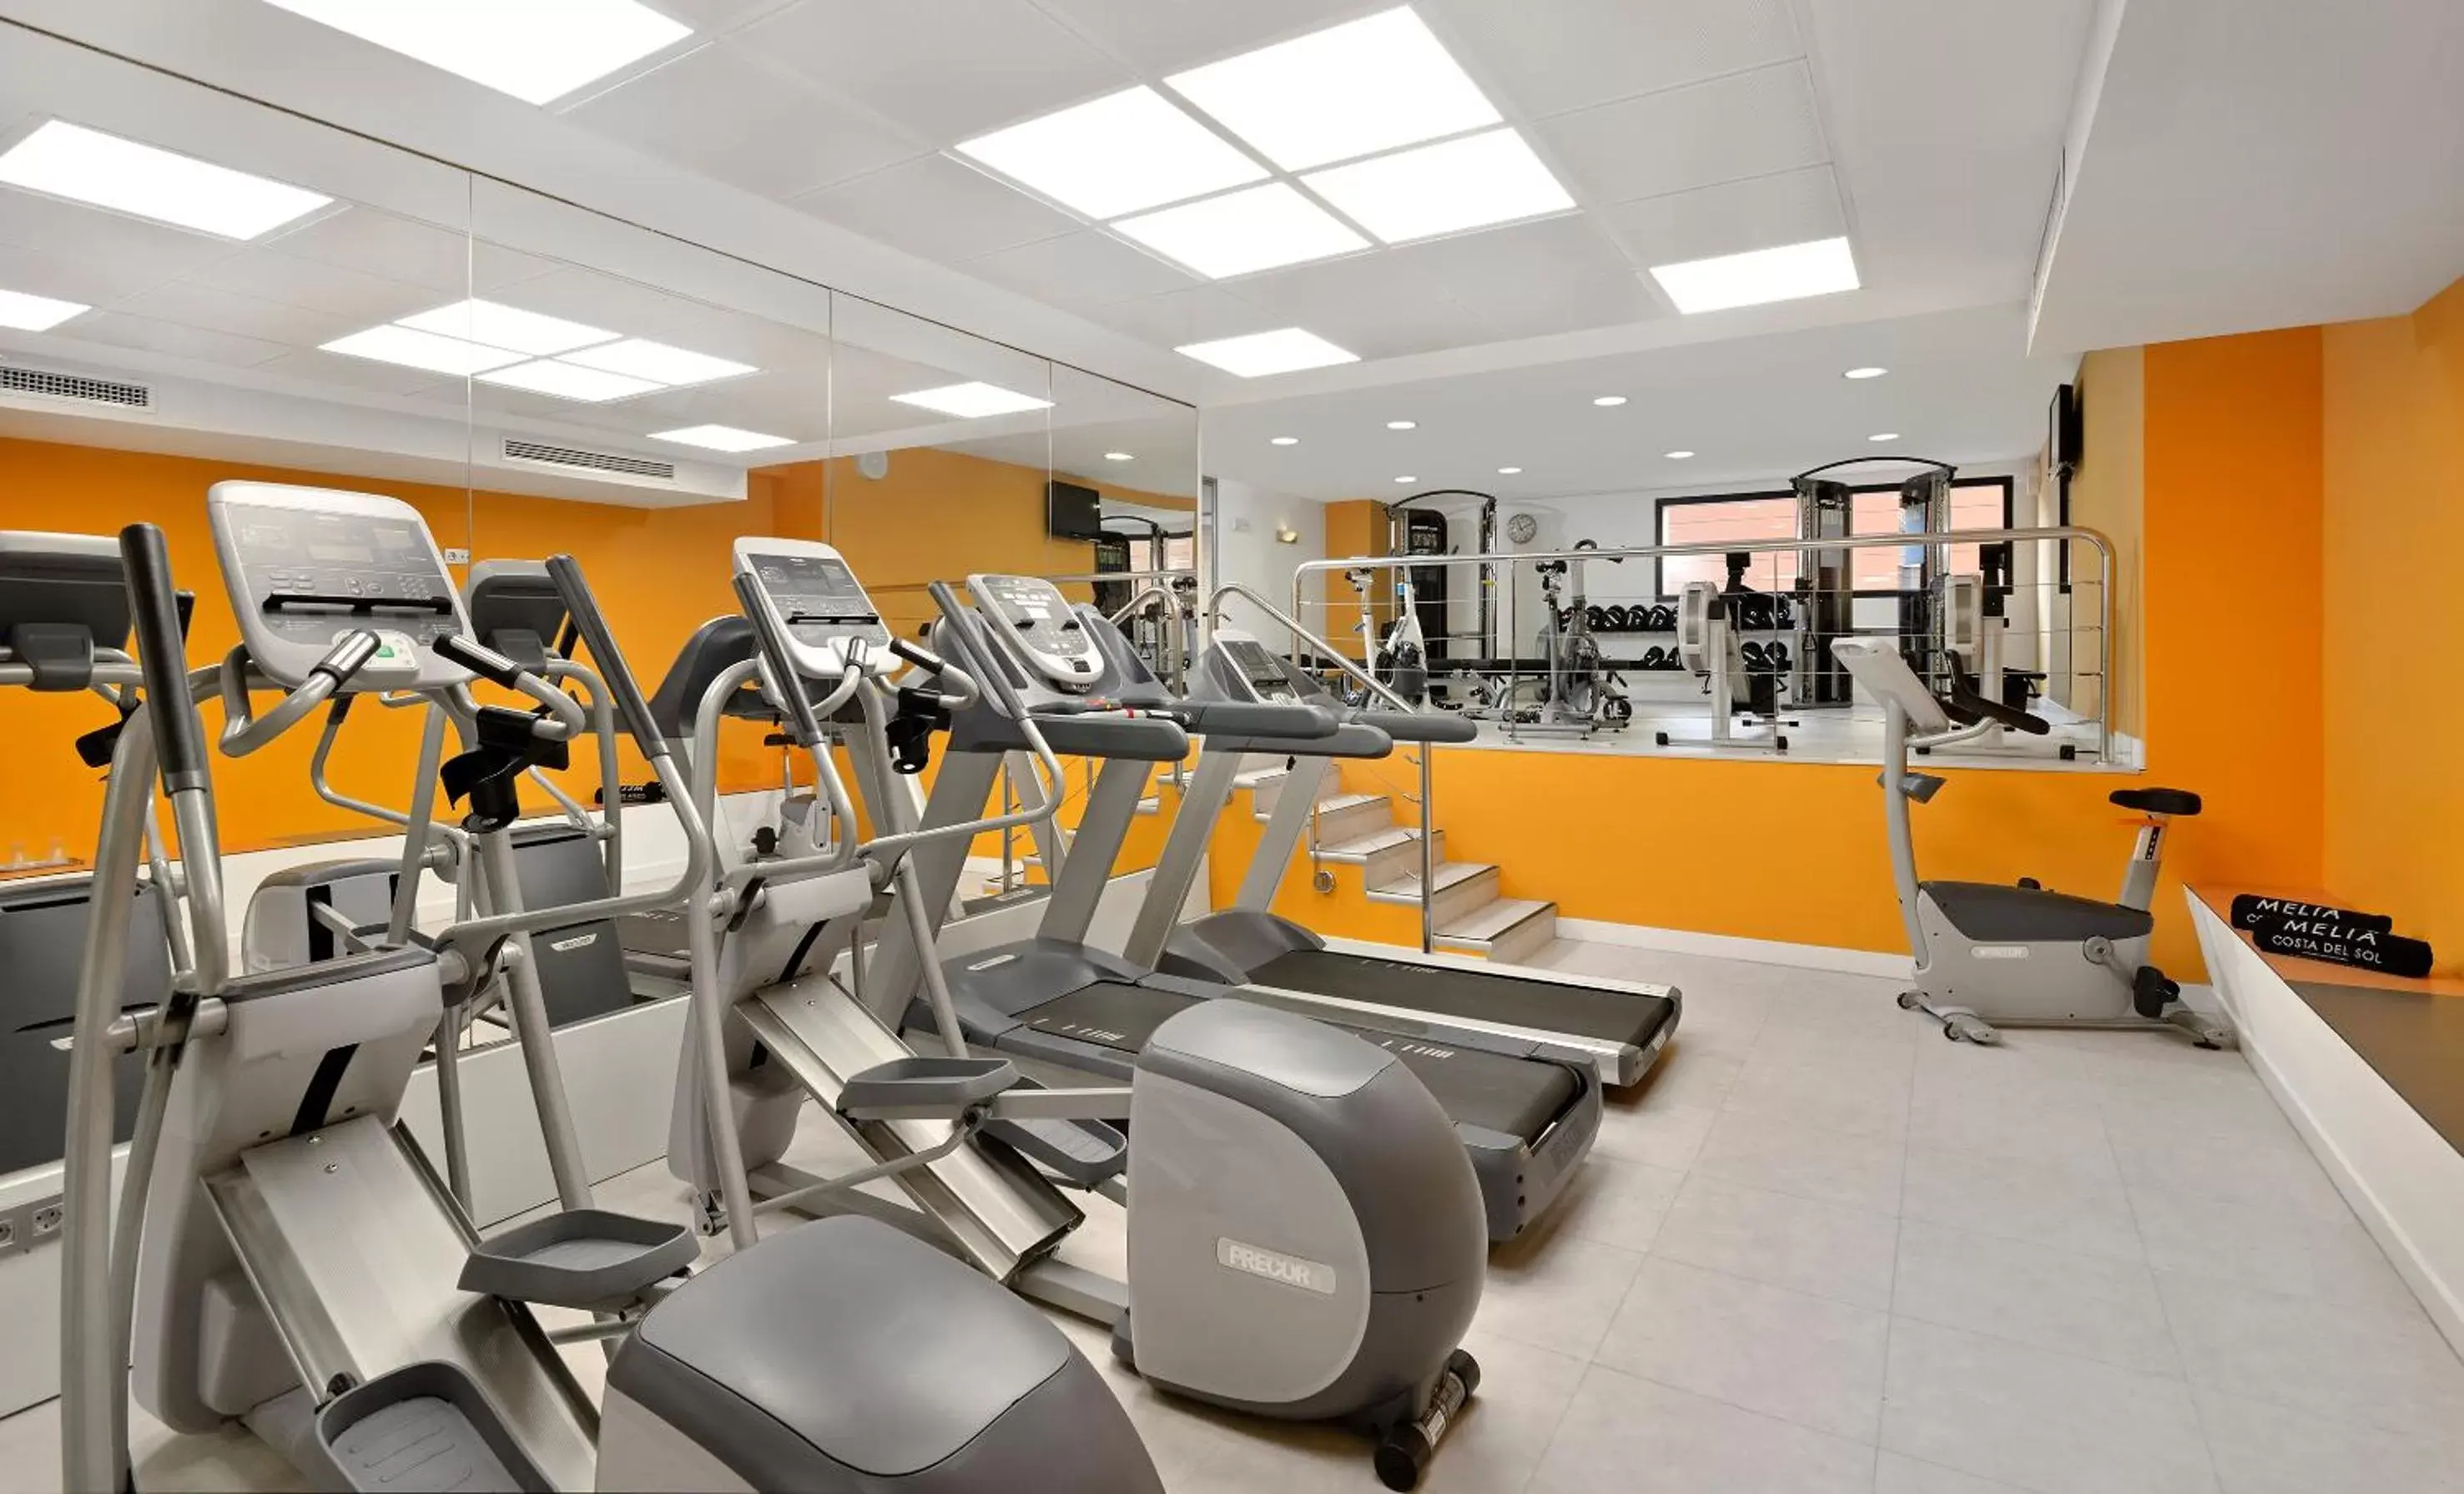 Fitness centre/facilities, Fitness Center/Facilities in Melia Costa del Sol